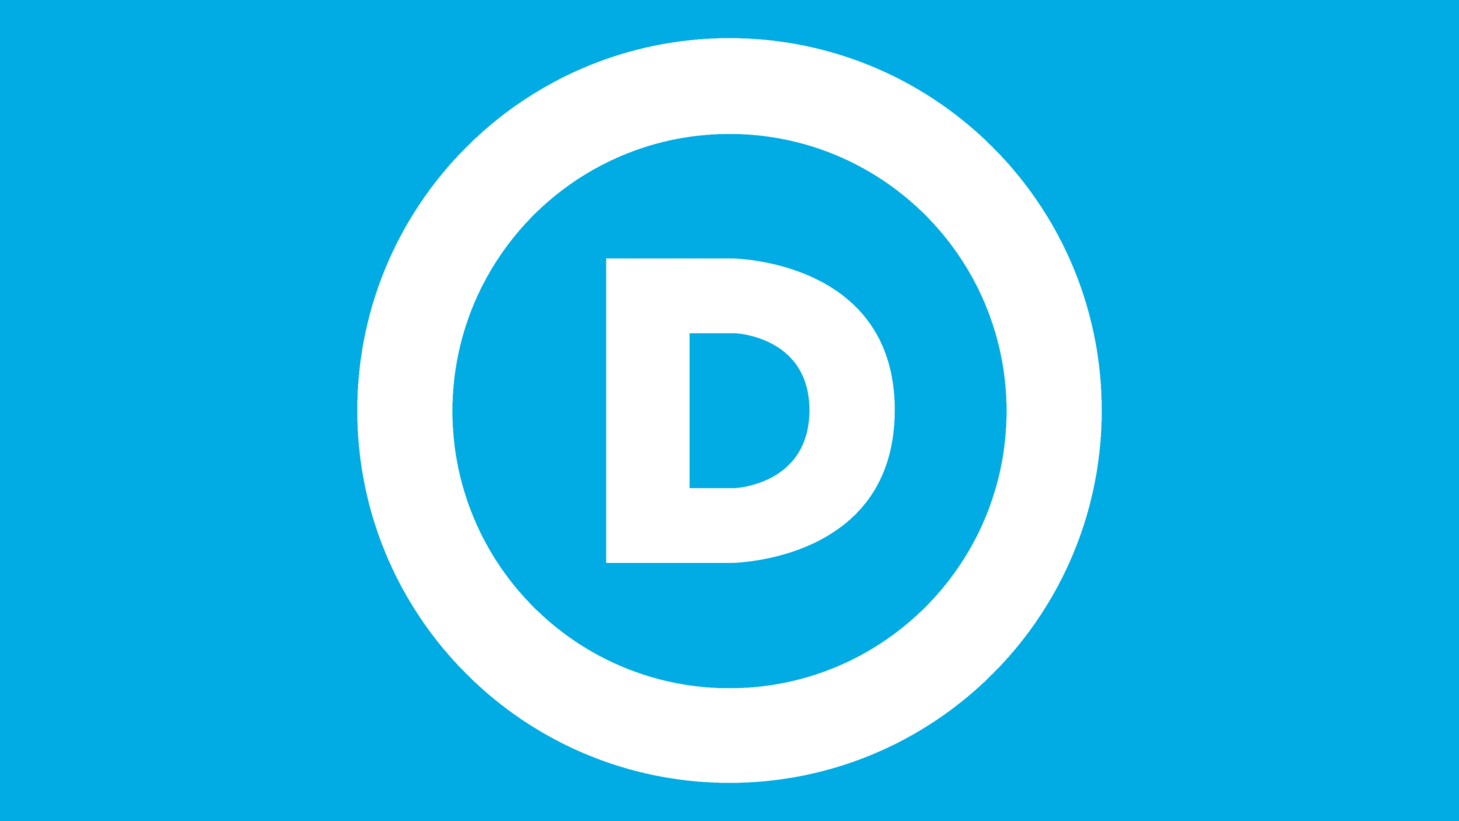 Democratic party symbol